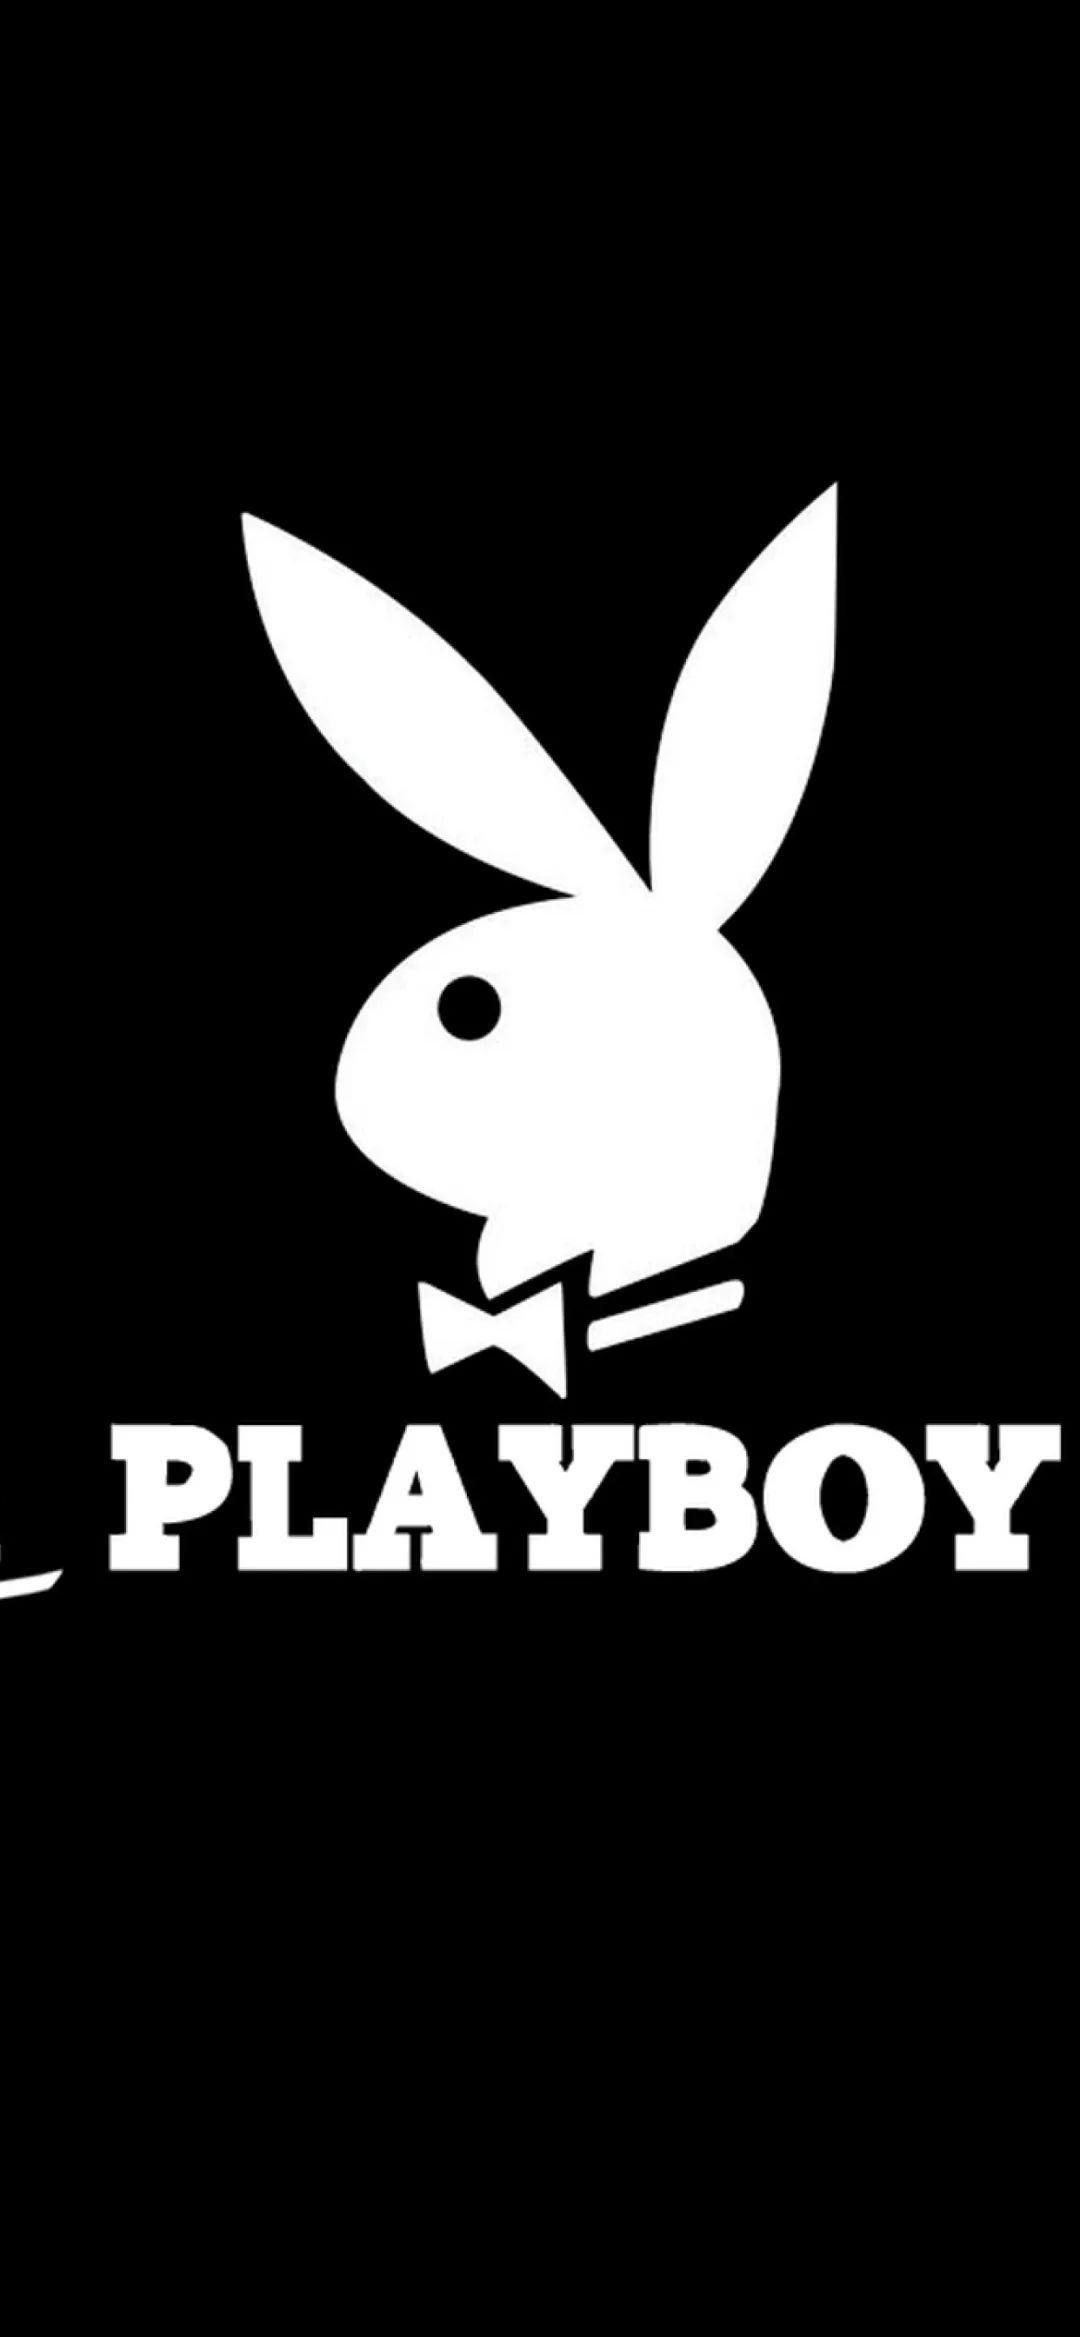 今日份壁纸 | playboy (4.23)